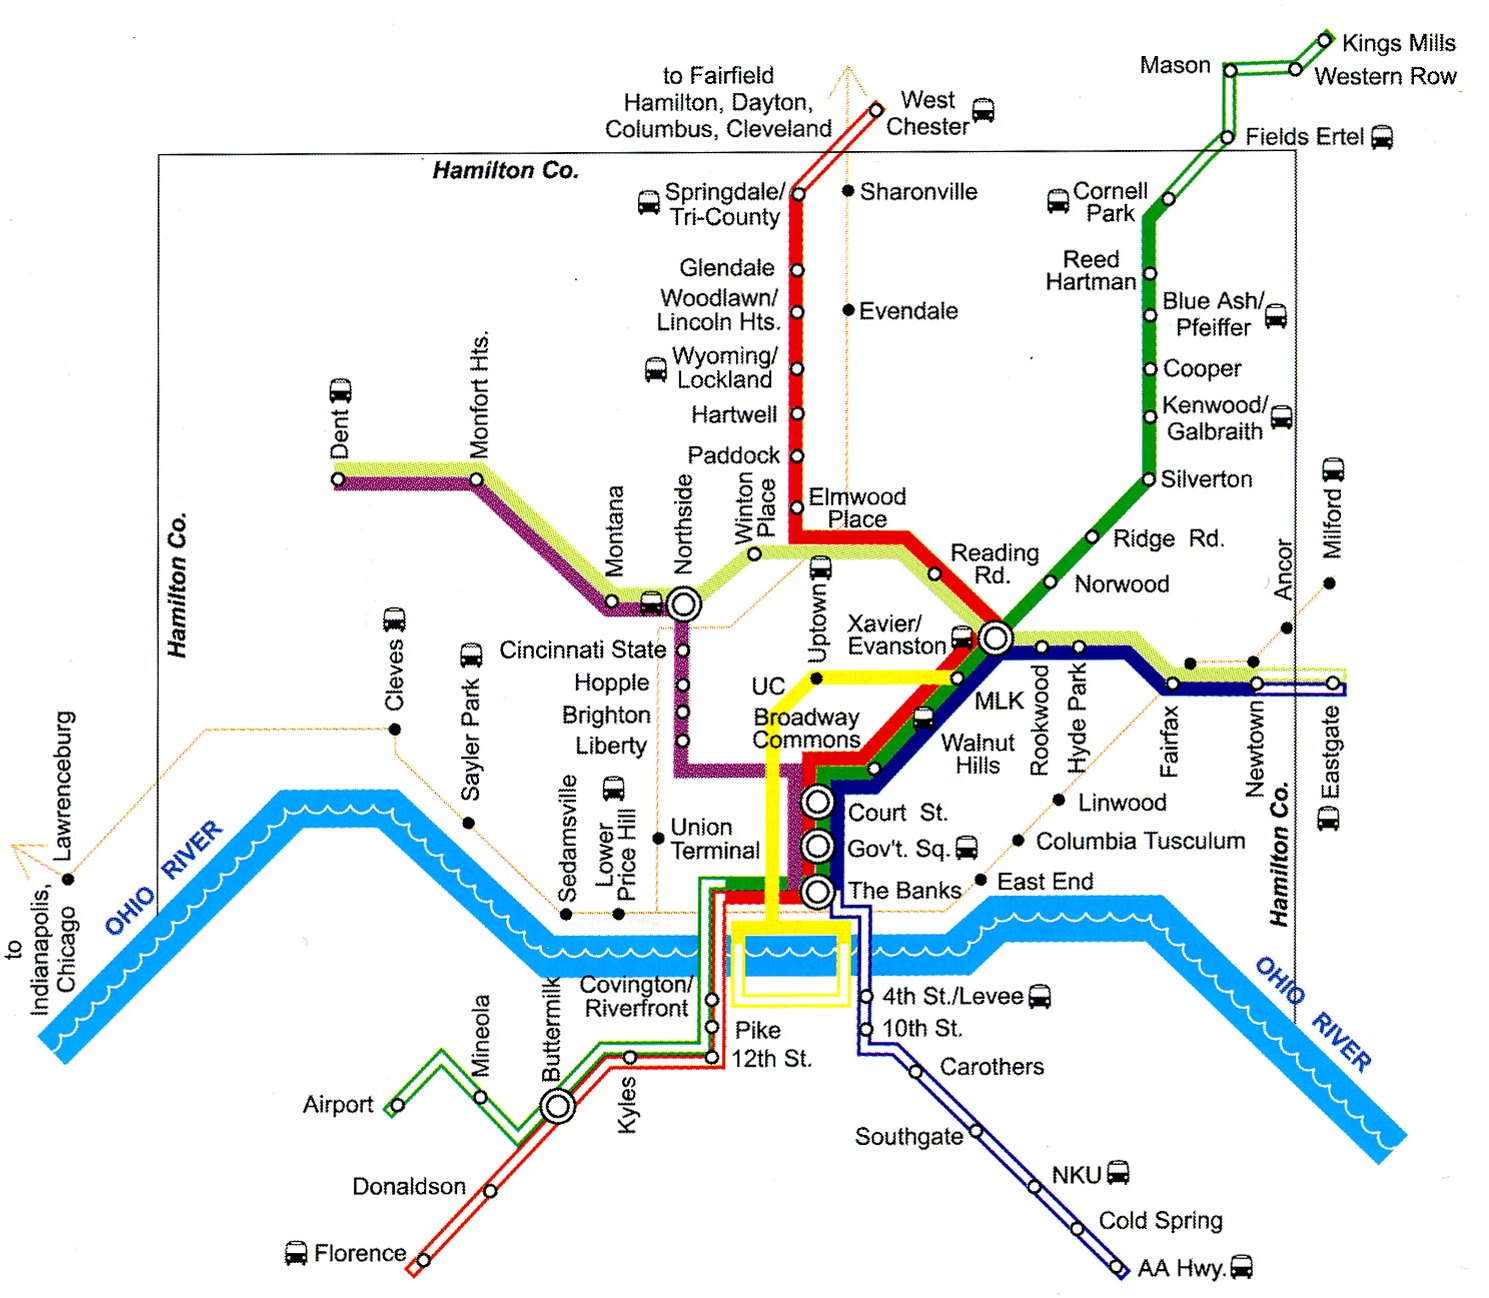 MetroMoves-Cincinnati.jpg